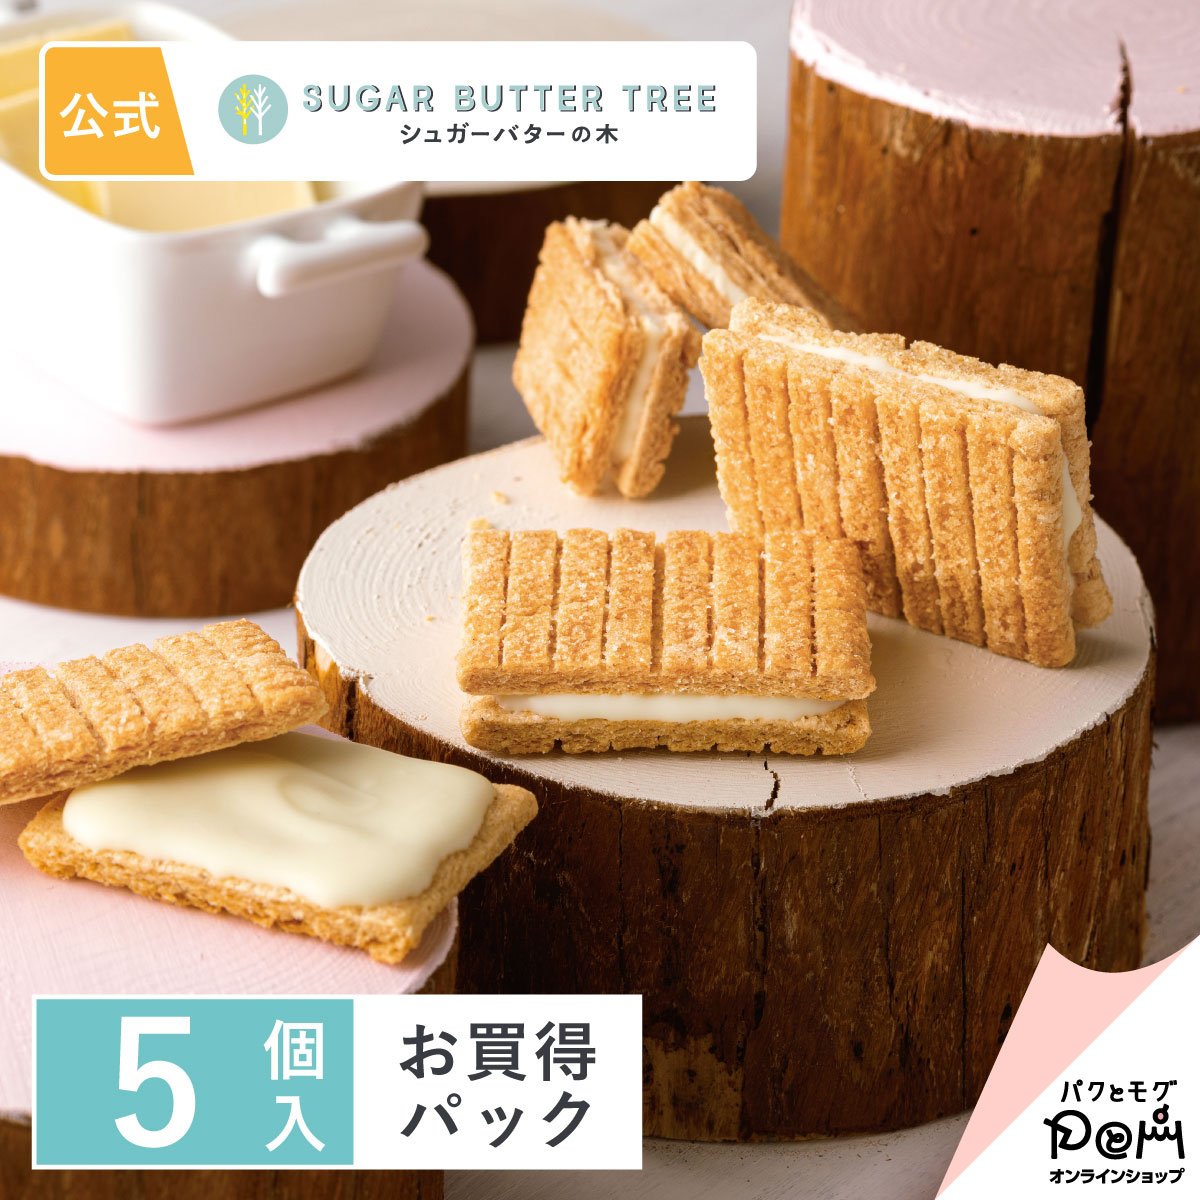 東京特產 砂糖奶油樹夾心餅 原味 5個入(85g) Sugar Butter Tree 砂糖奶油樹 日本必買 | 日本樂天熱銷